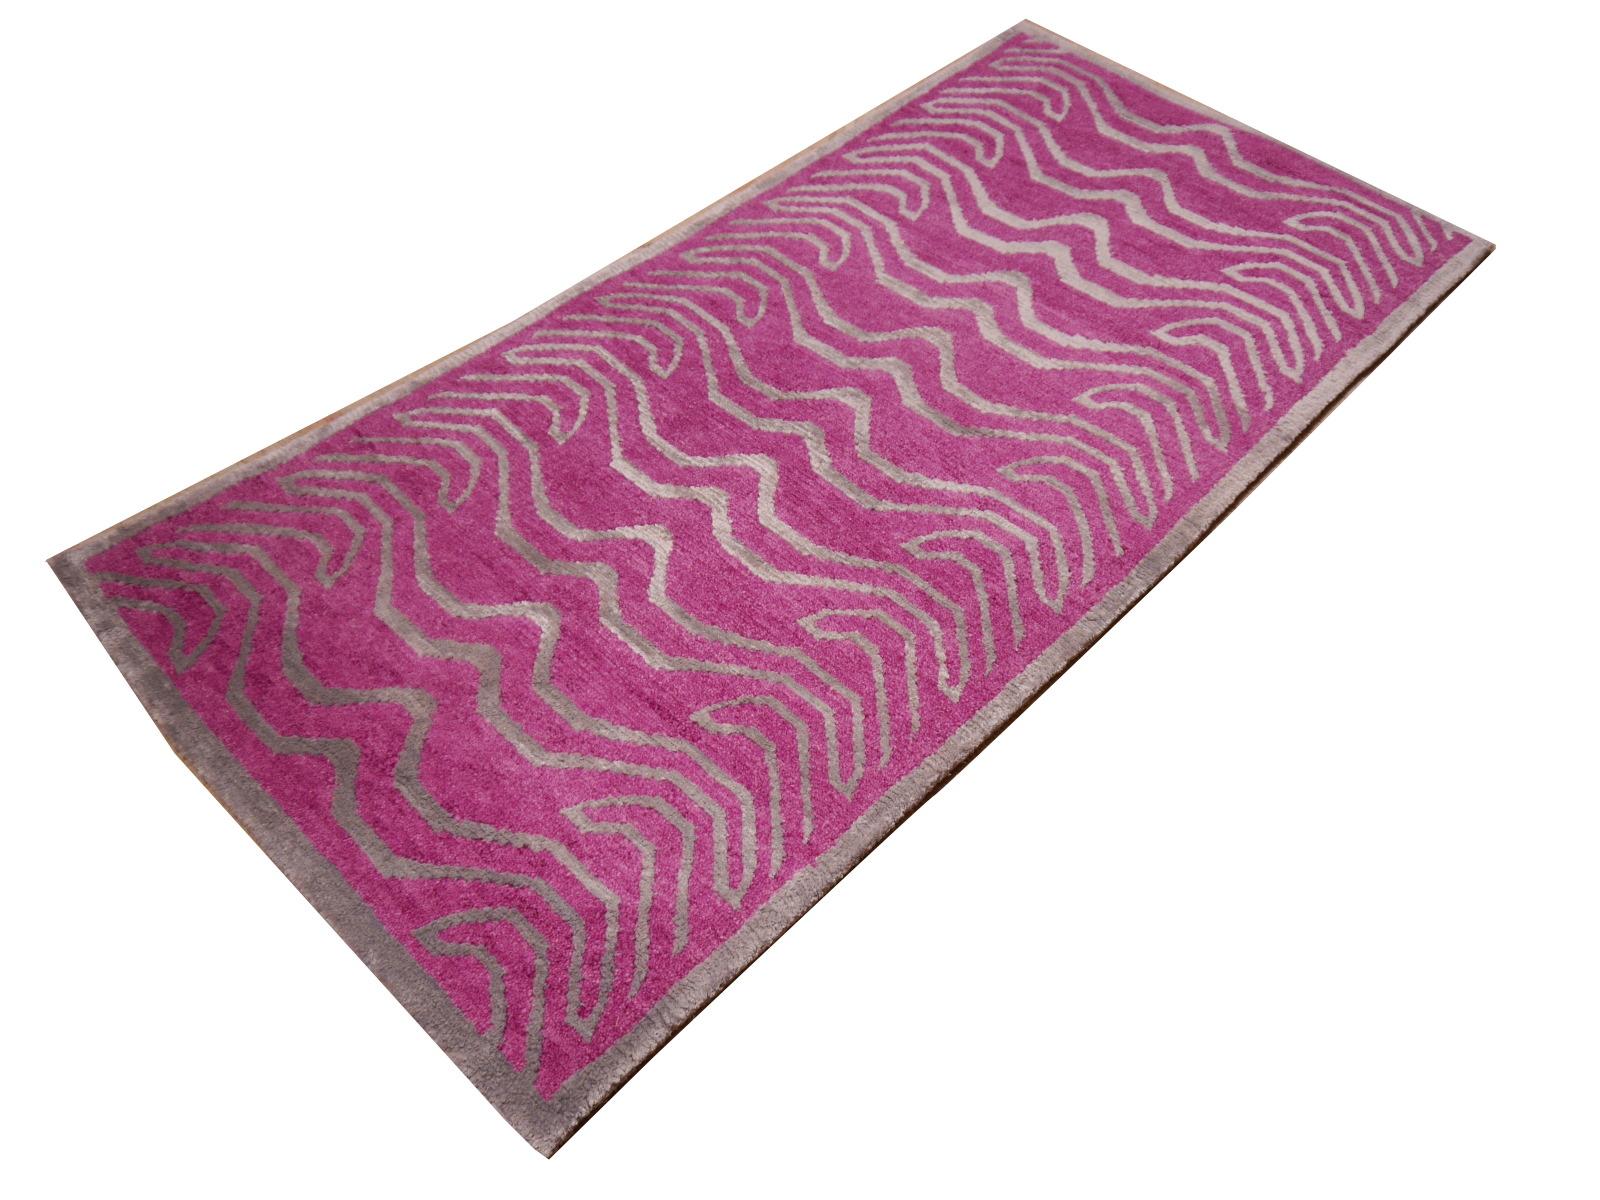 Ein rosa und silberfarbener tibetischer Tiger-Teppich, handgeknüpft in Nepal.

Dieses traditionelle Tiger-Muster findet sich typischerweise auf antiken Teppichen, die Khaden genannt werden. Er beschreibt einen kleinen Teppich von etwa 3 x 6 Fuß, der